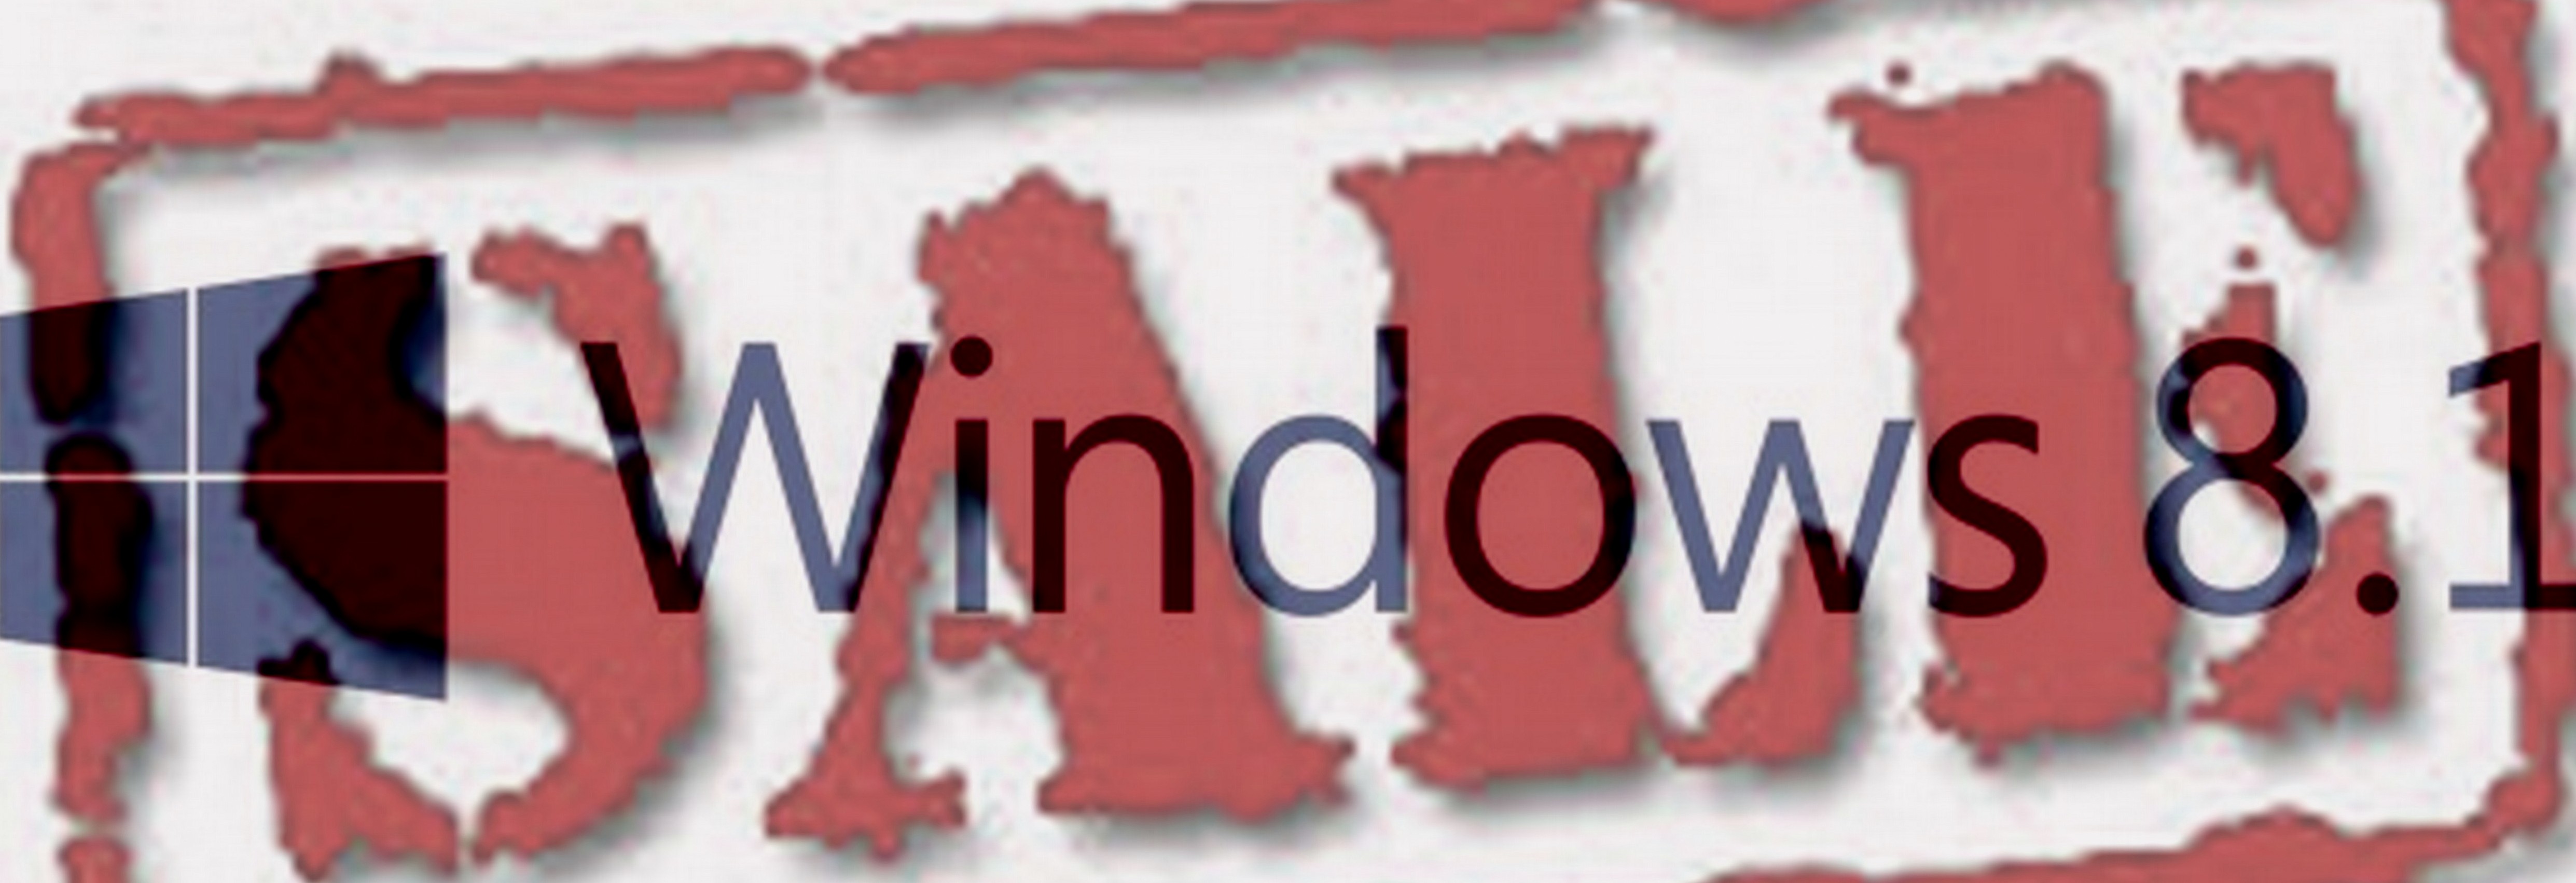 Windows_8.1